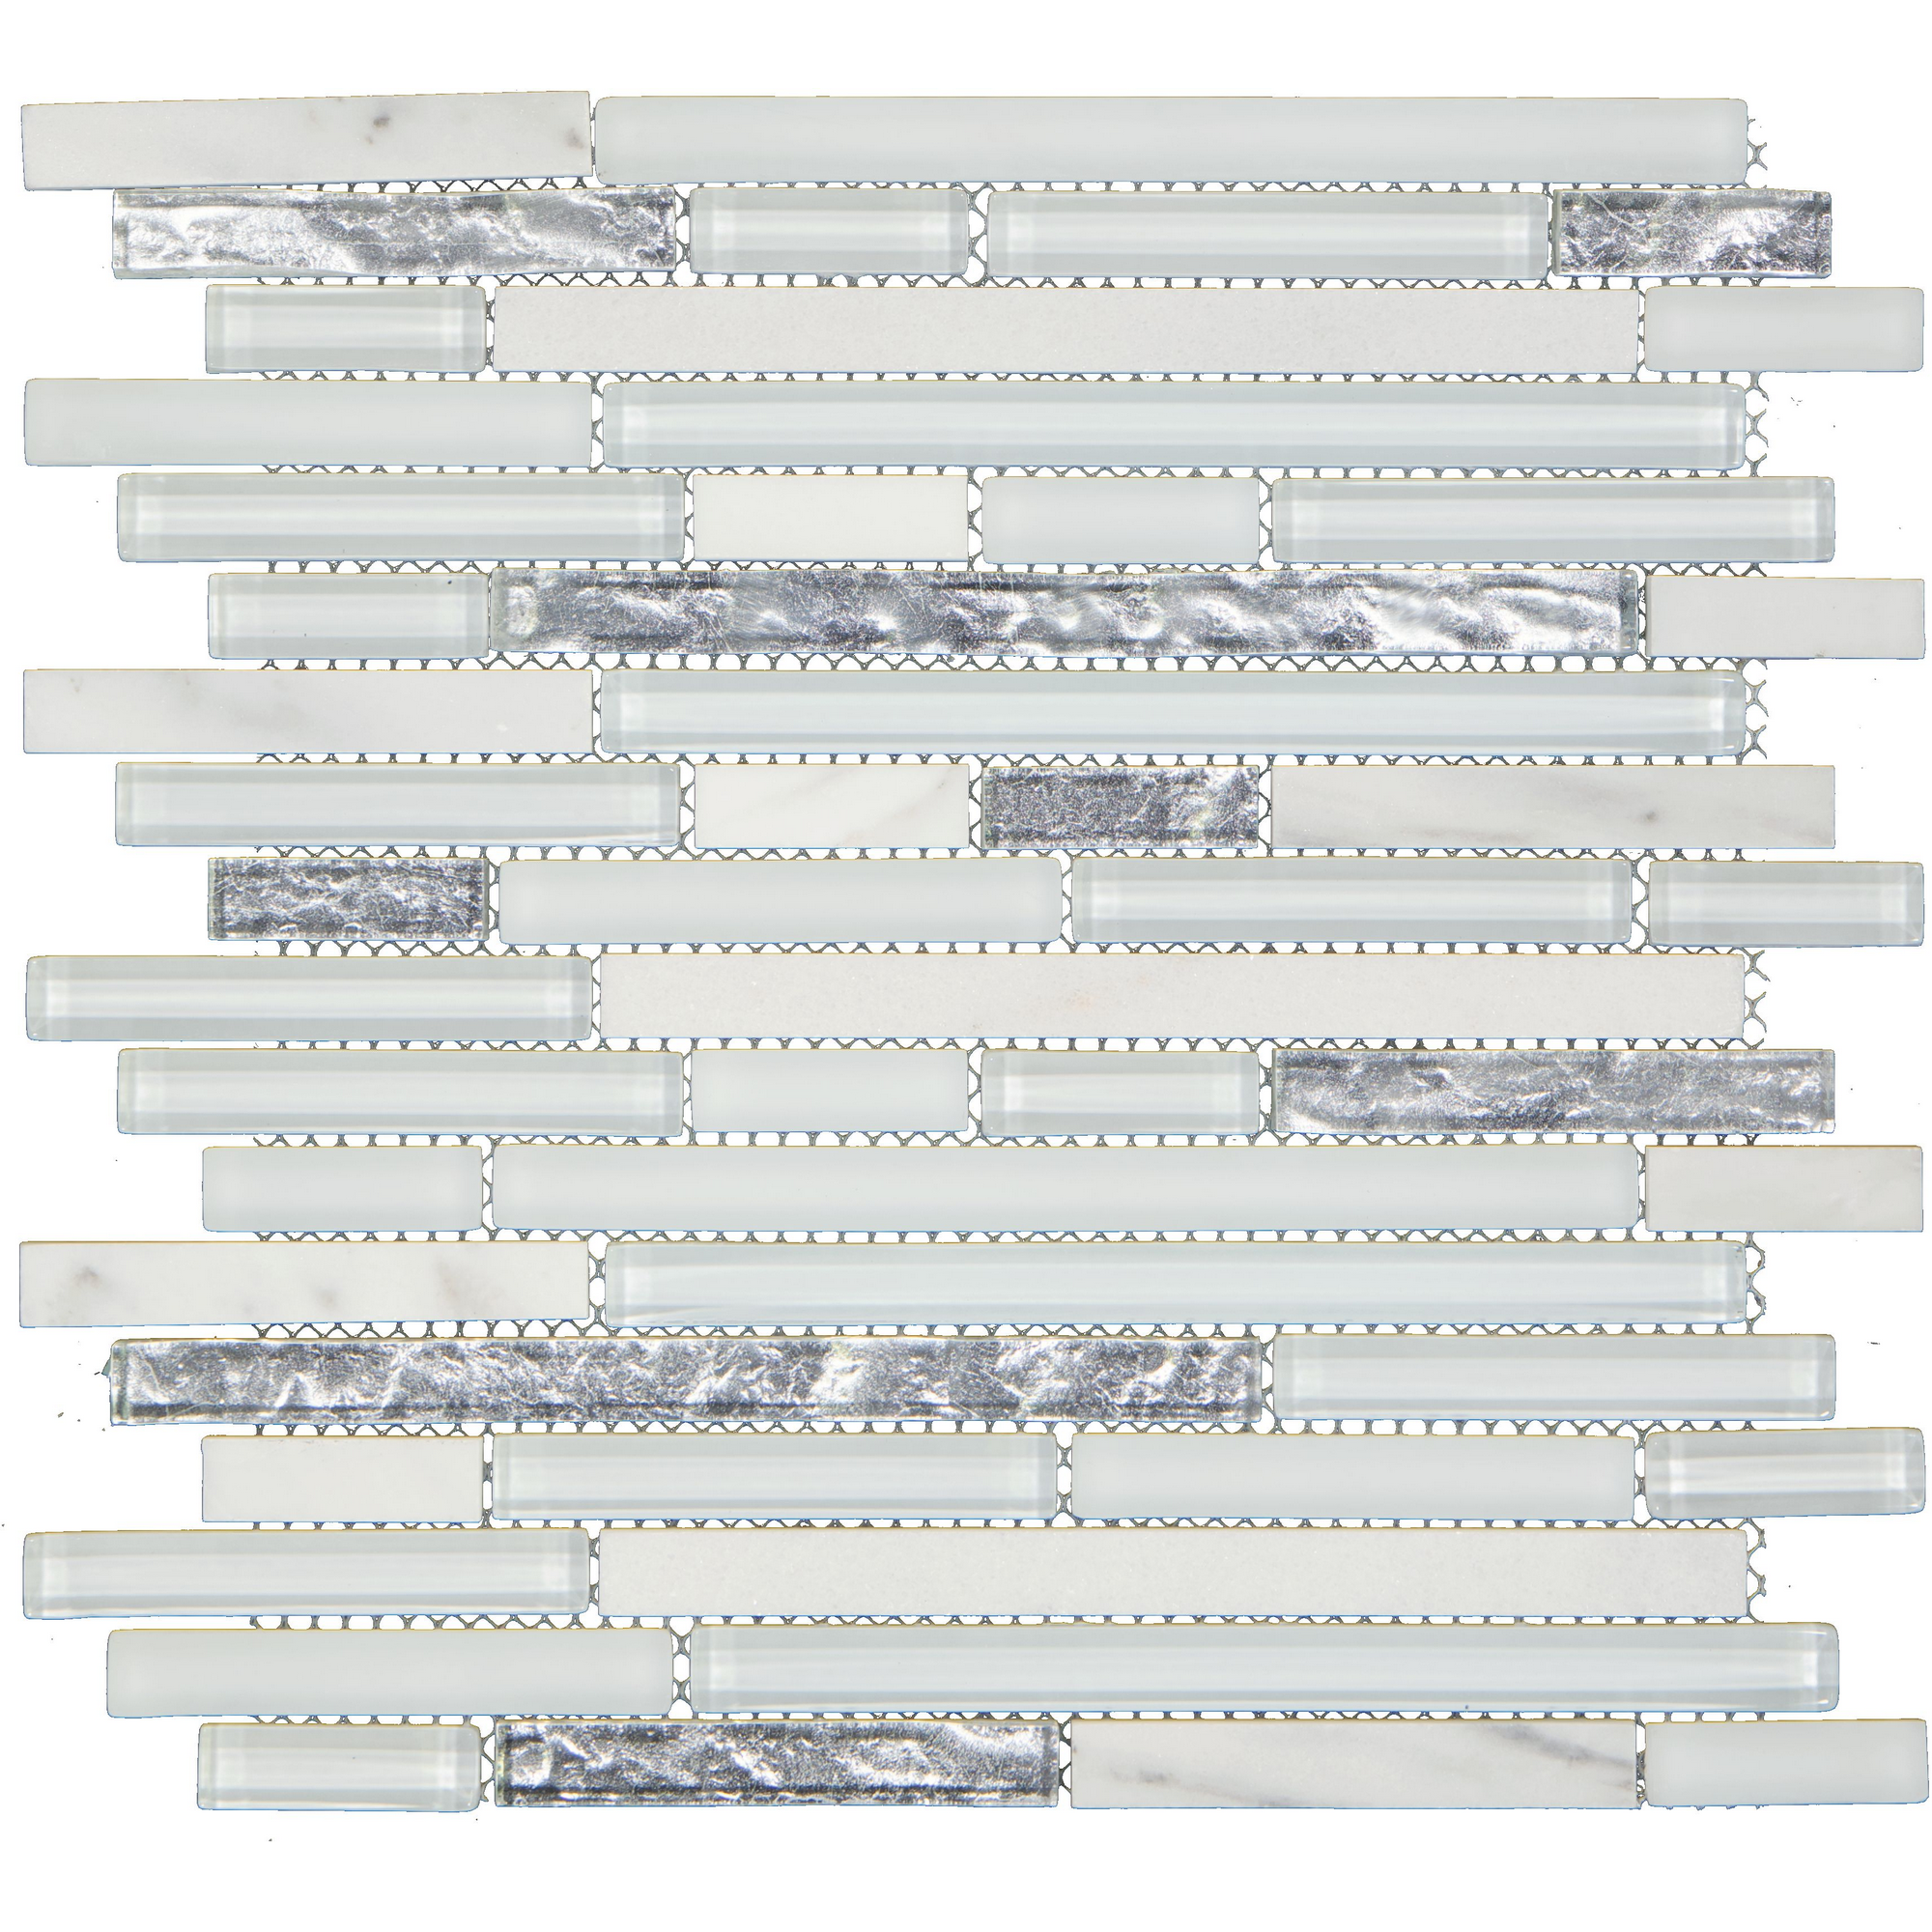 Mosaikfliese 'Cristallo ' Glas, Naturstein weiß-grau 30,5 x 30,5 cm + product picture